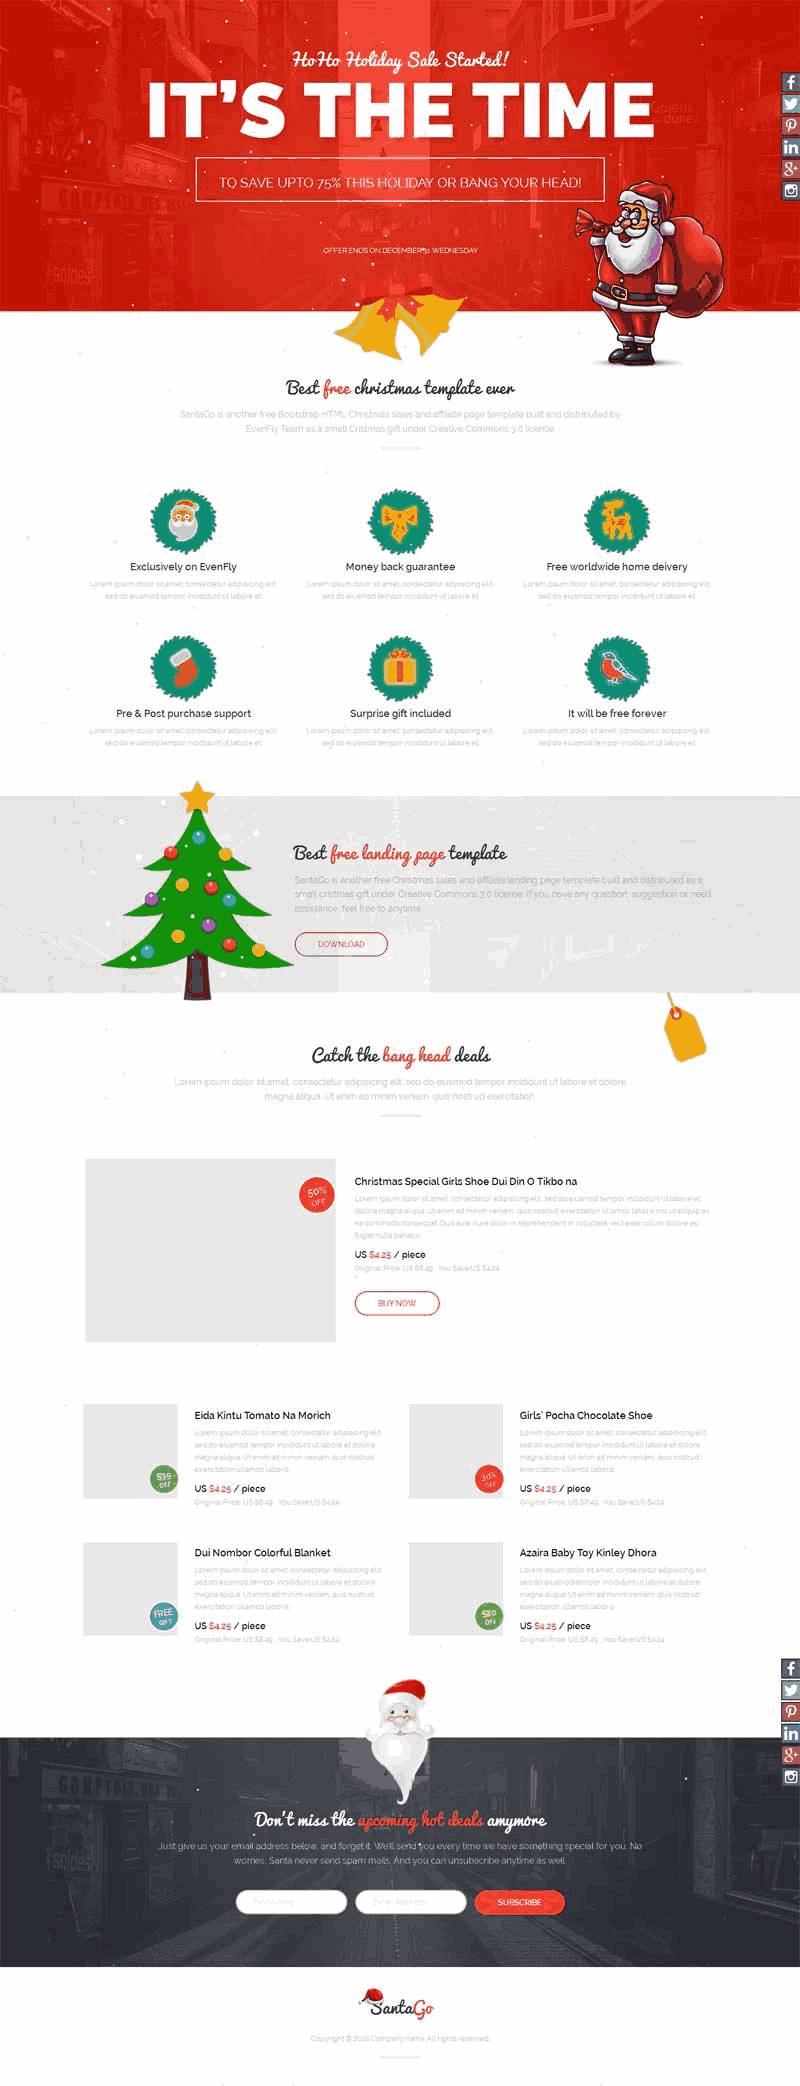 国外商品促销圣诞节专题网站WordPress主题下载演示图